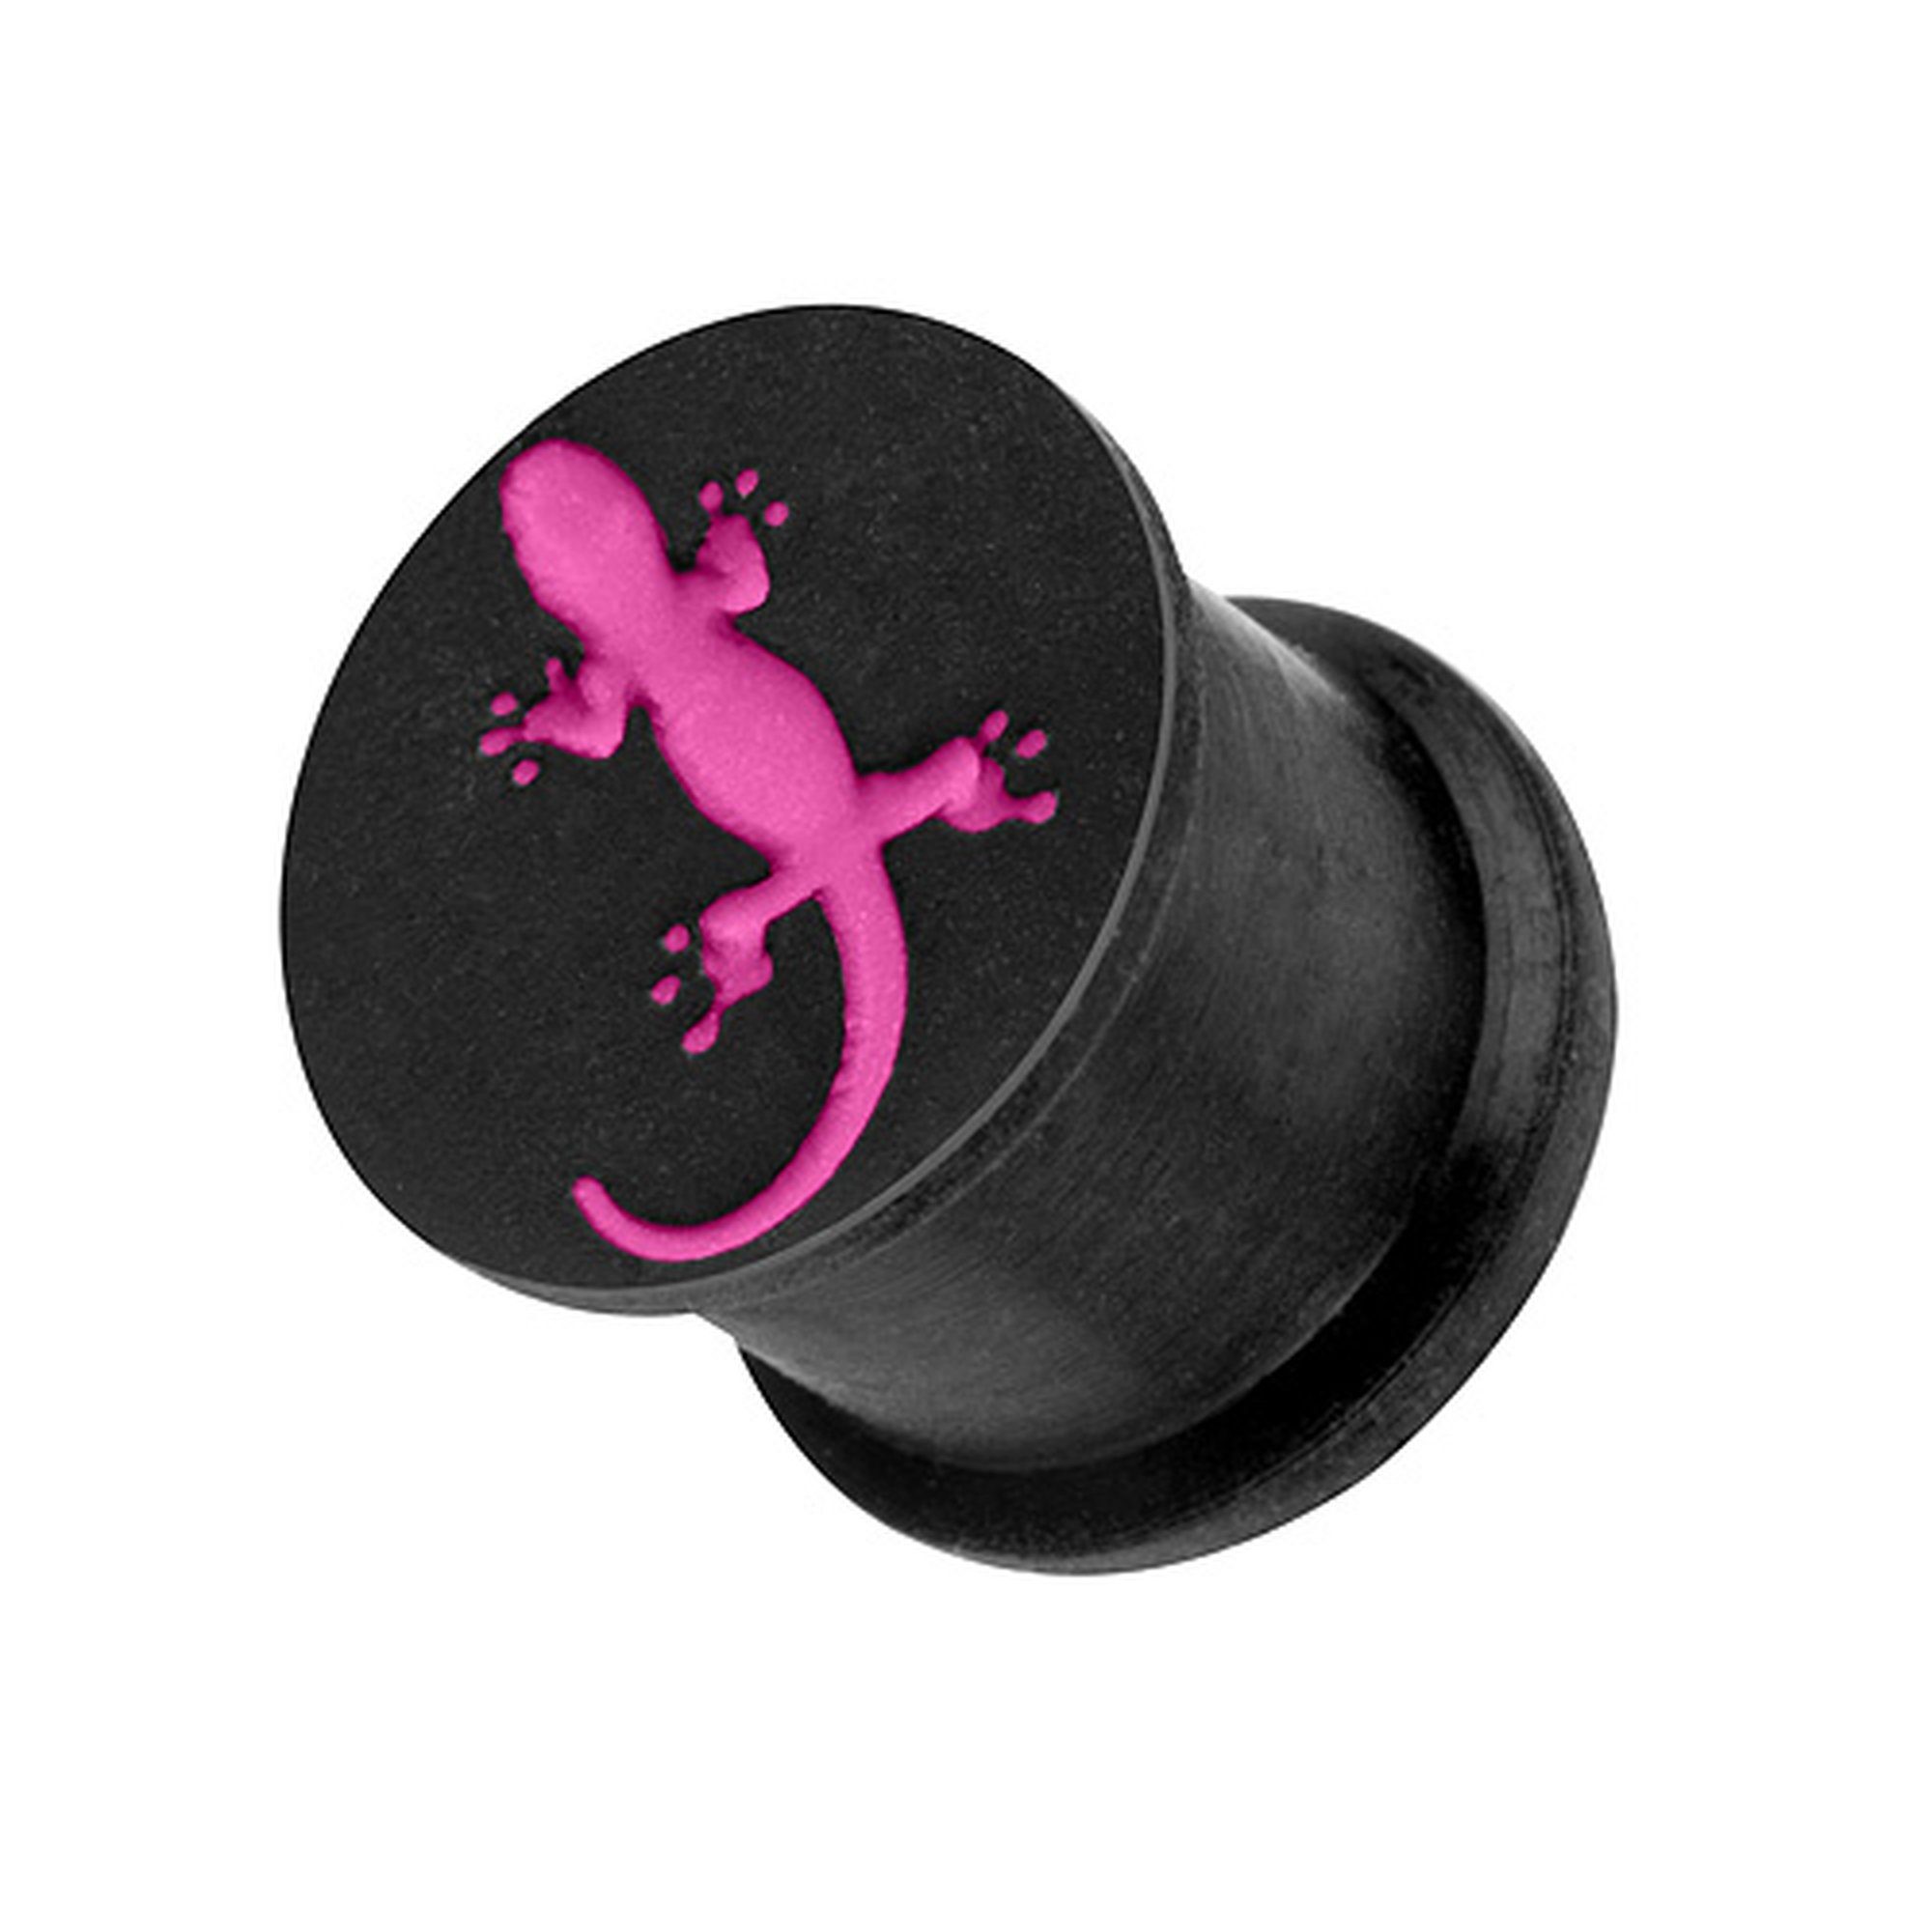 Taffstyle Plug Ohr Plug Piercing Ohrpiercing 3D Silikon Eidechse, Ohr Plug Flesh Tunnel Piercing Ohrpiercing 3D in verschiedenen Farben Pink